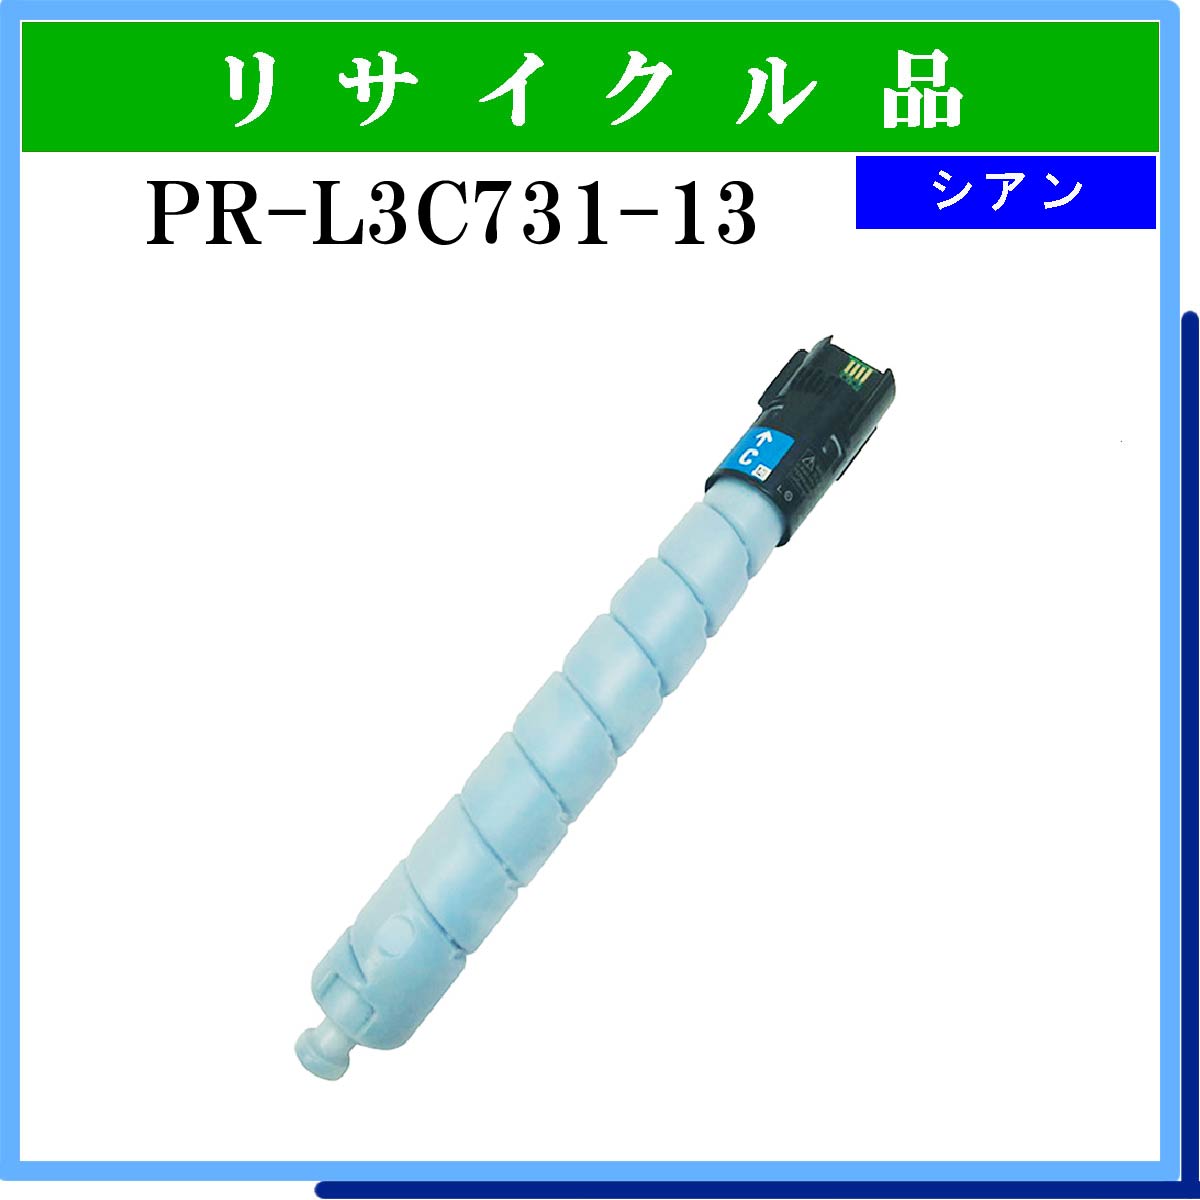 PR-L3C731-13